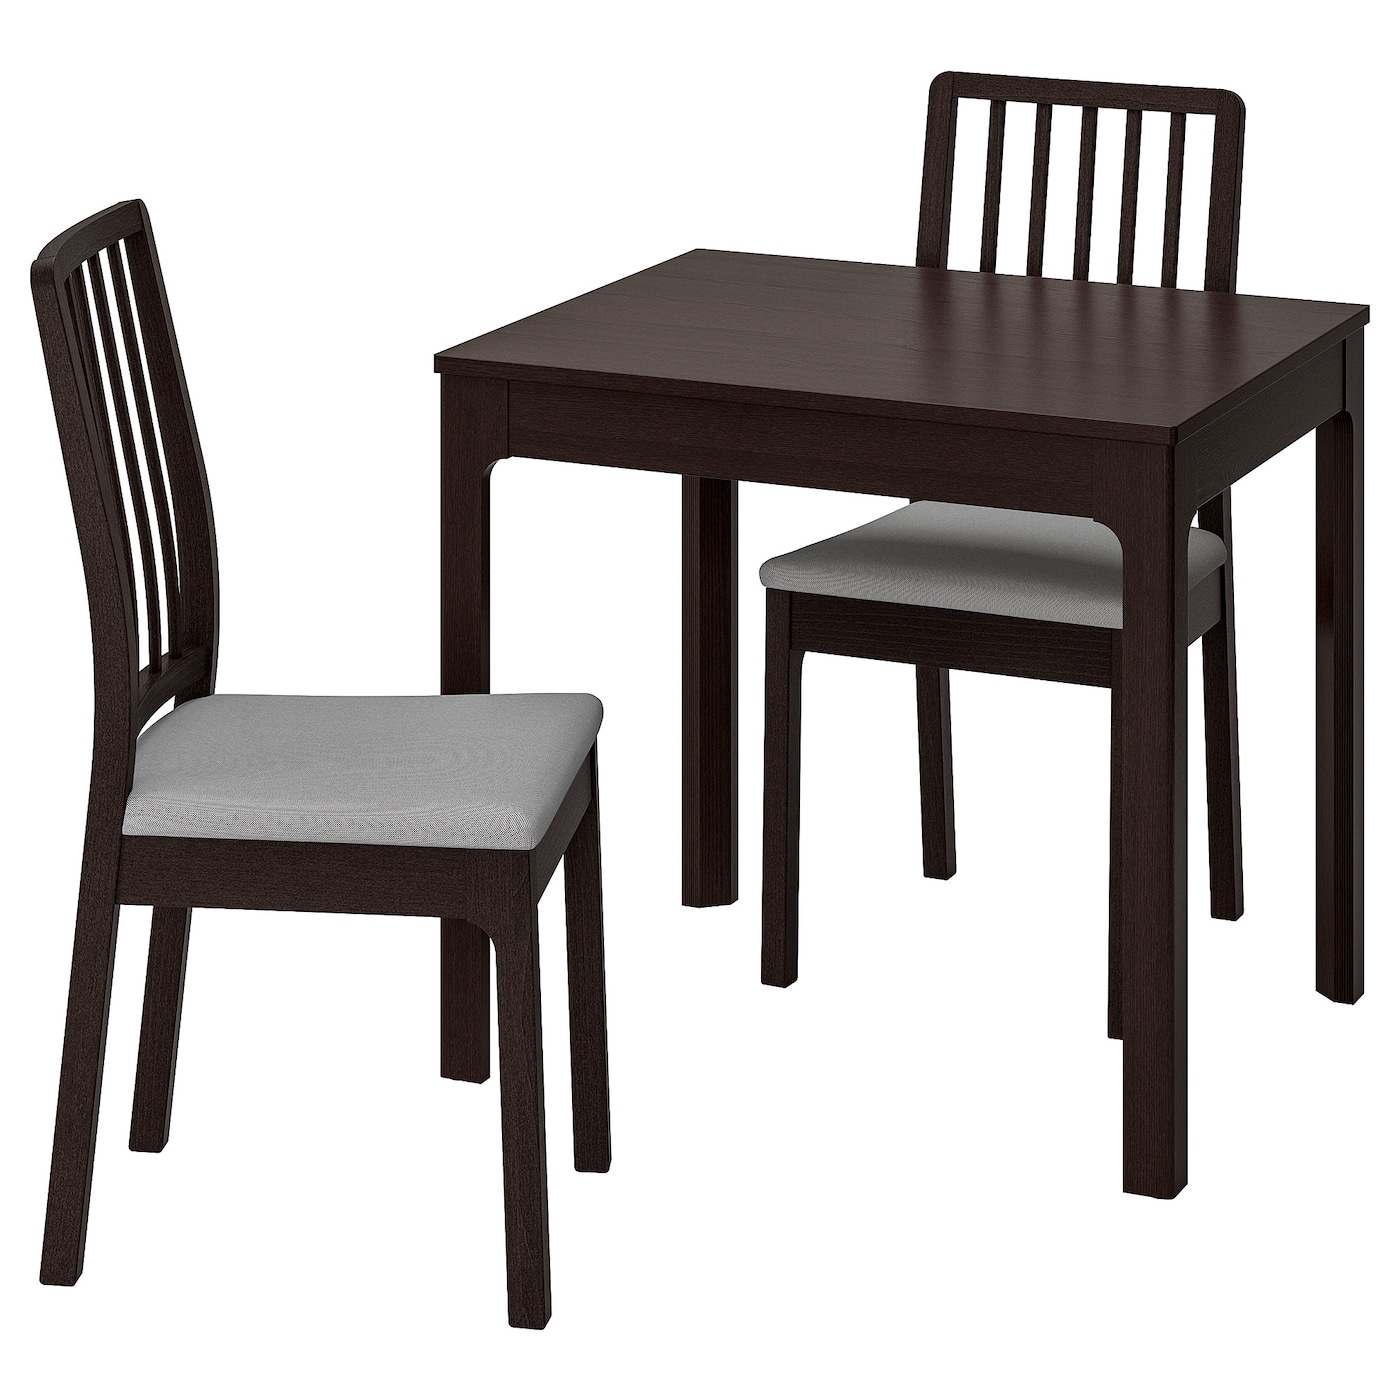 Стол и 2 стула - EKEDALEN / EKEDALEN IKEA/ ЭКЕДАЛЕН ИКЕА, 120х80  см, коричневый